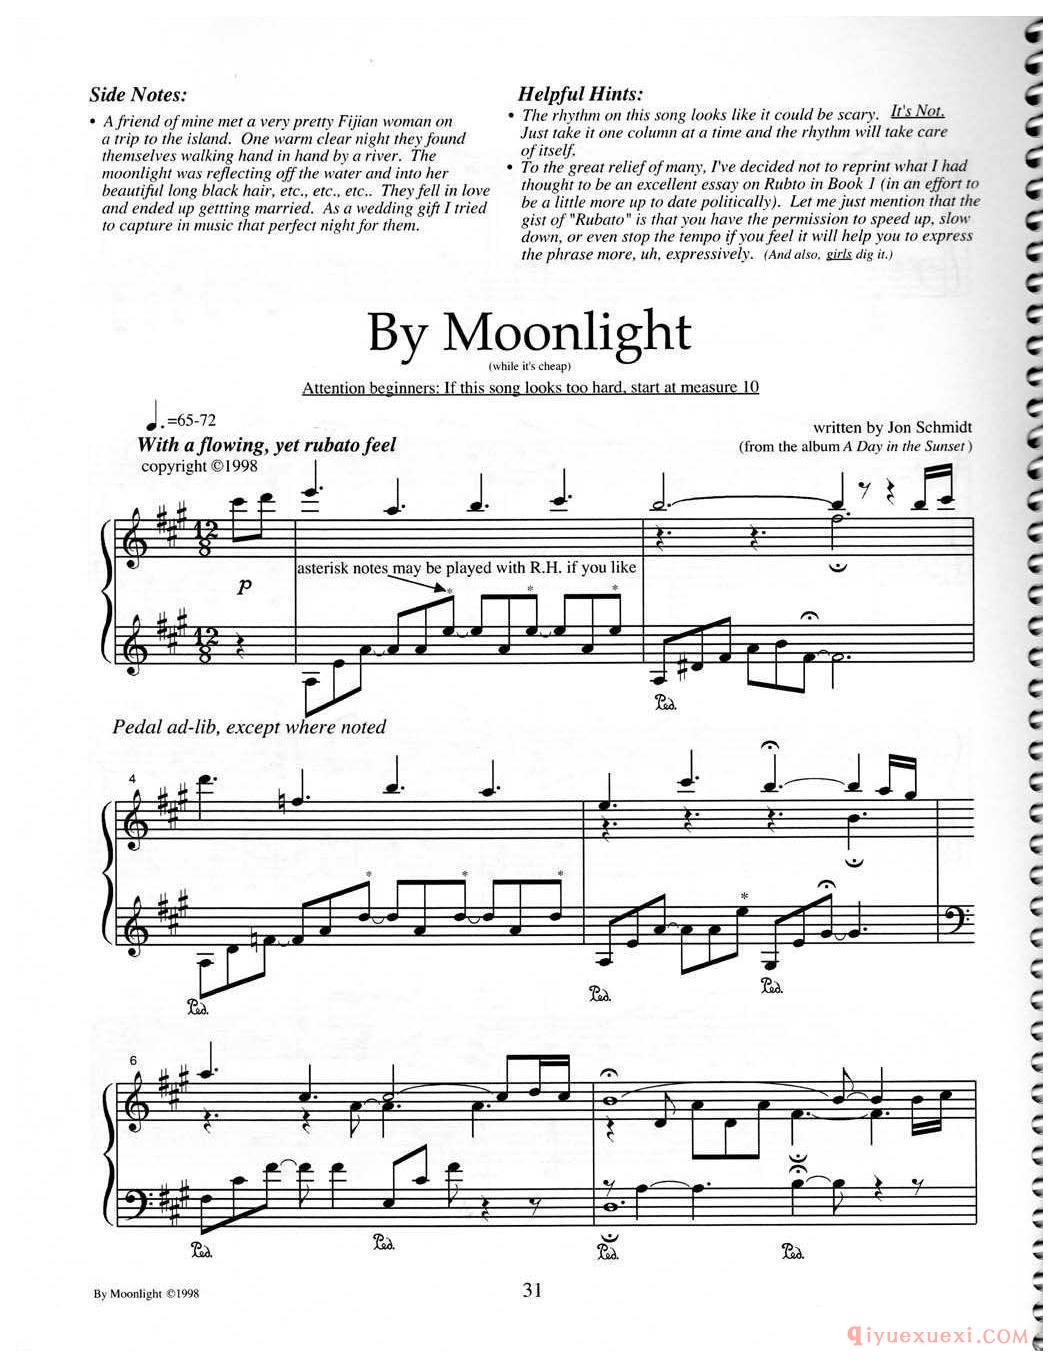 钢琴独奏曲《By Moonlight》Jon Schmidt